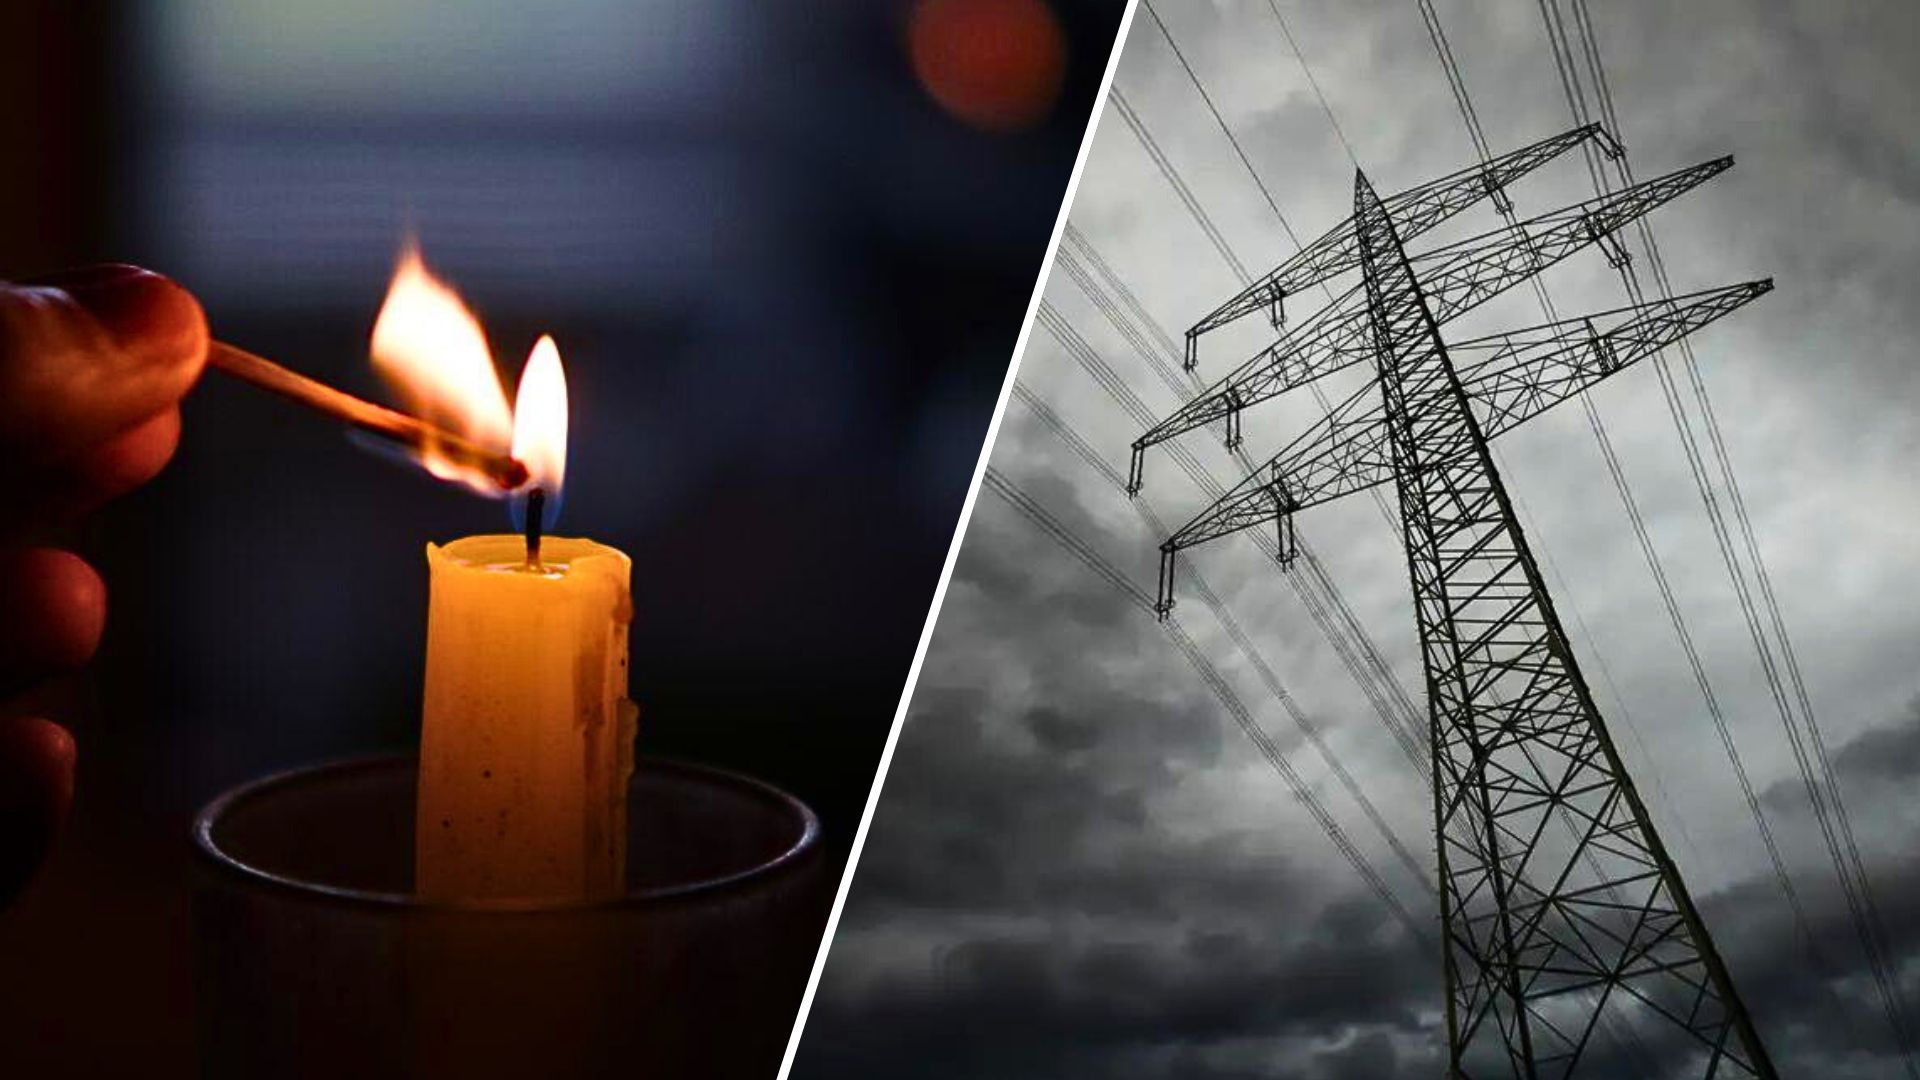 Україна стикається з викликами в енергетичному секторі, особливо через погодні умови. Це може призвести до того, що в Івано-Франківській області будуть застосовуватися нічні аварійні відключення електроенергії.